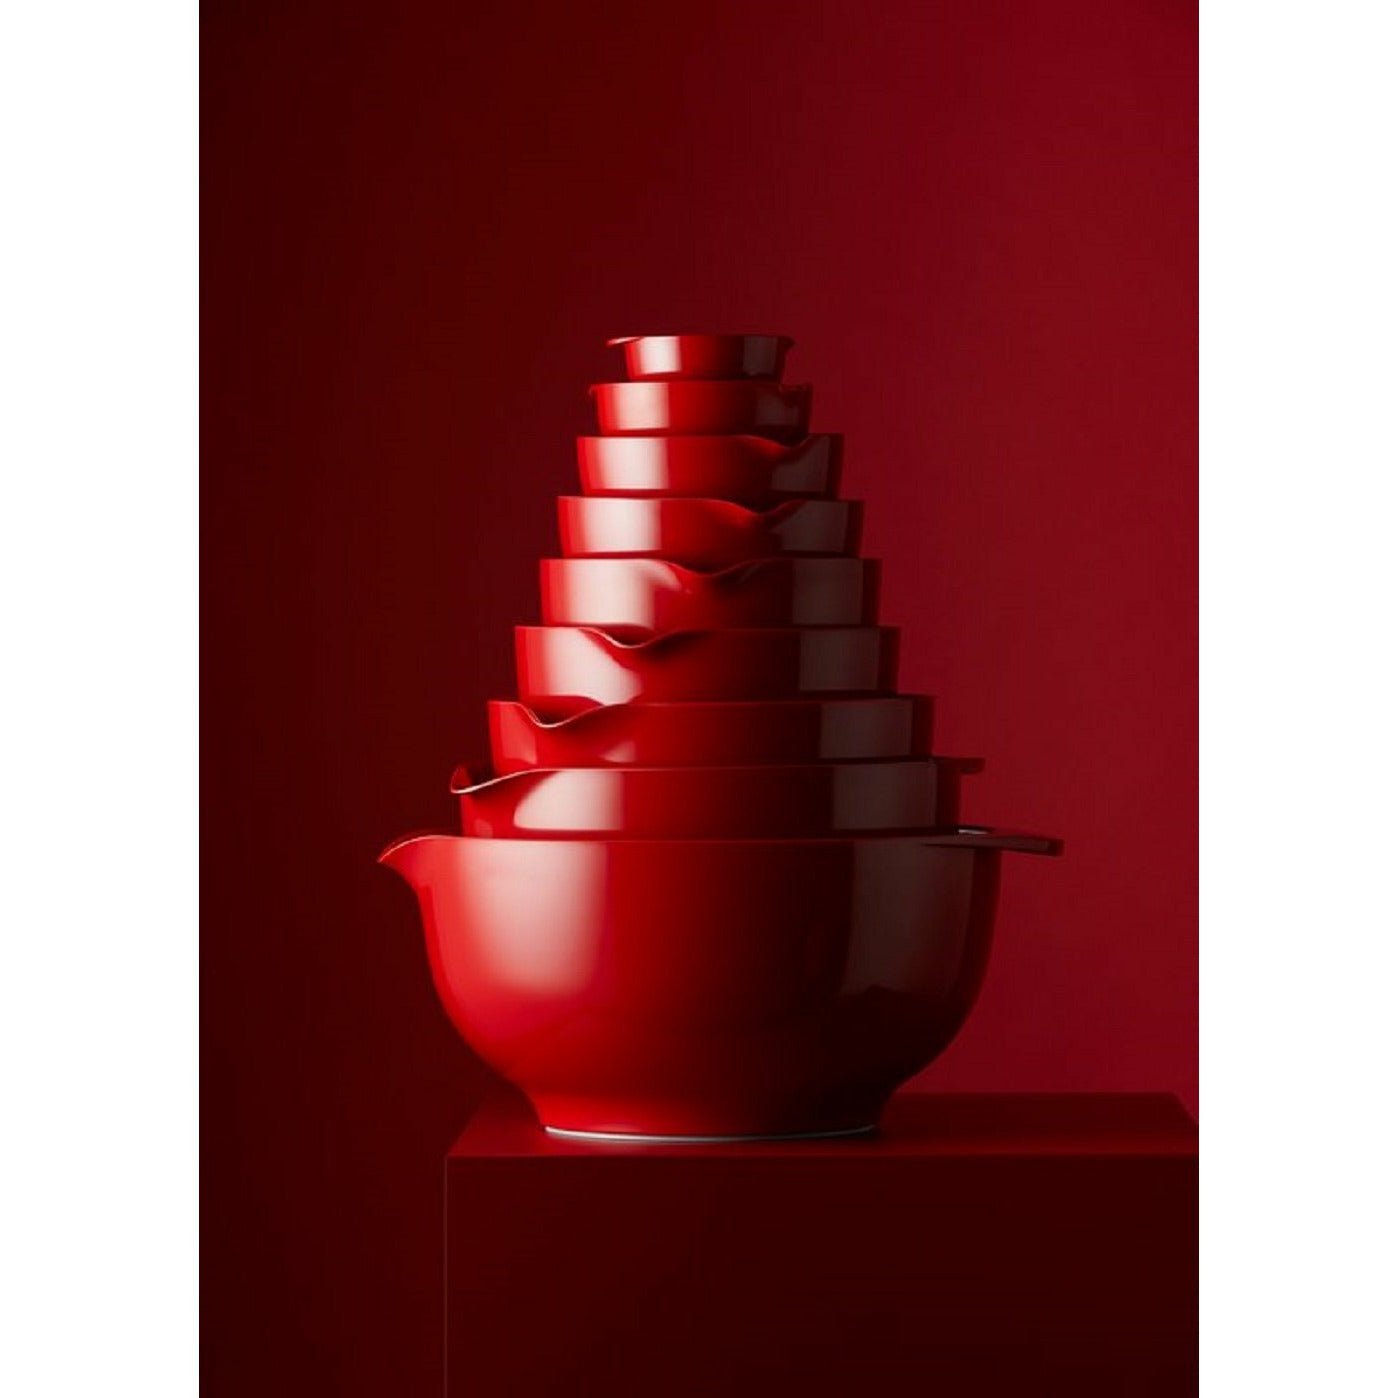 Rosti Margrethe Mixing Bowl Red, 5 liter